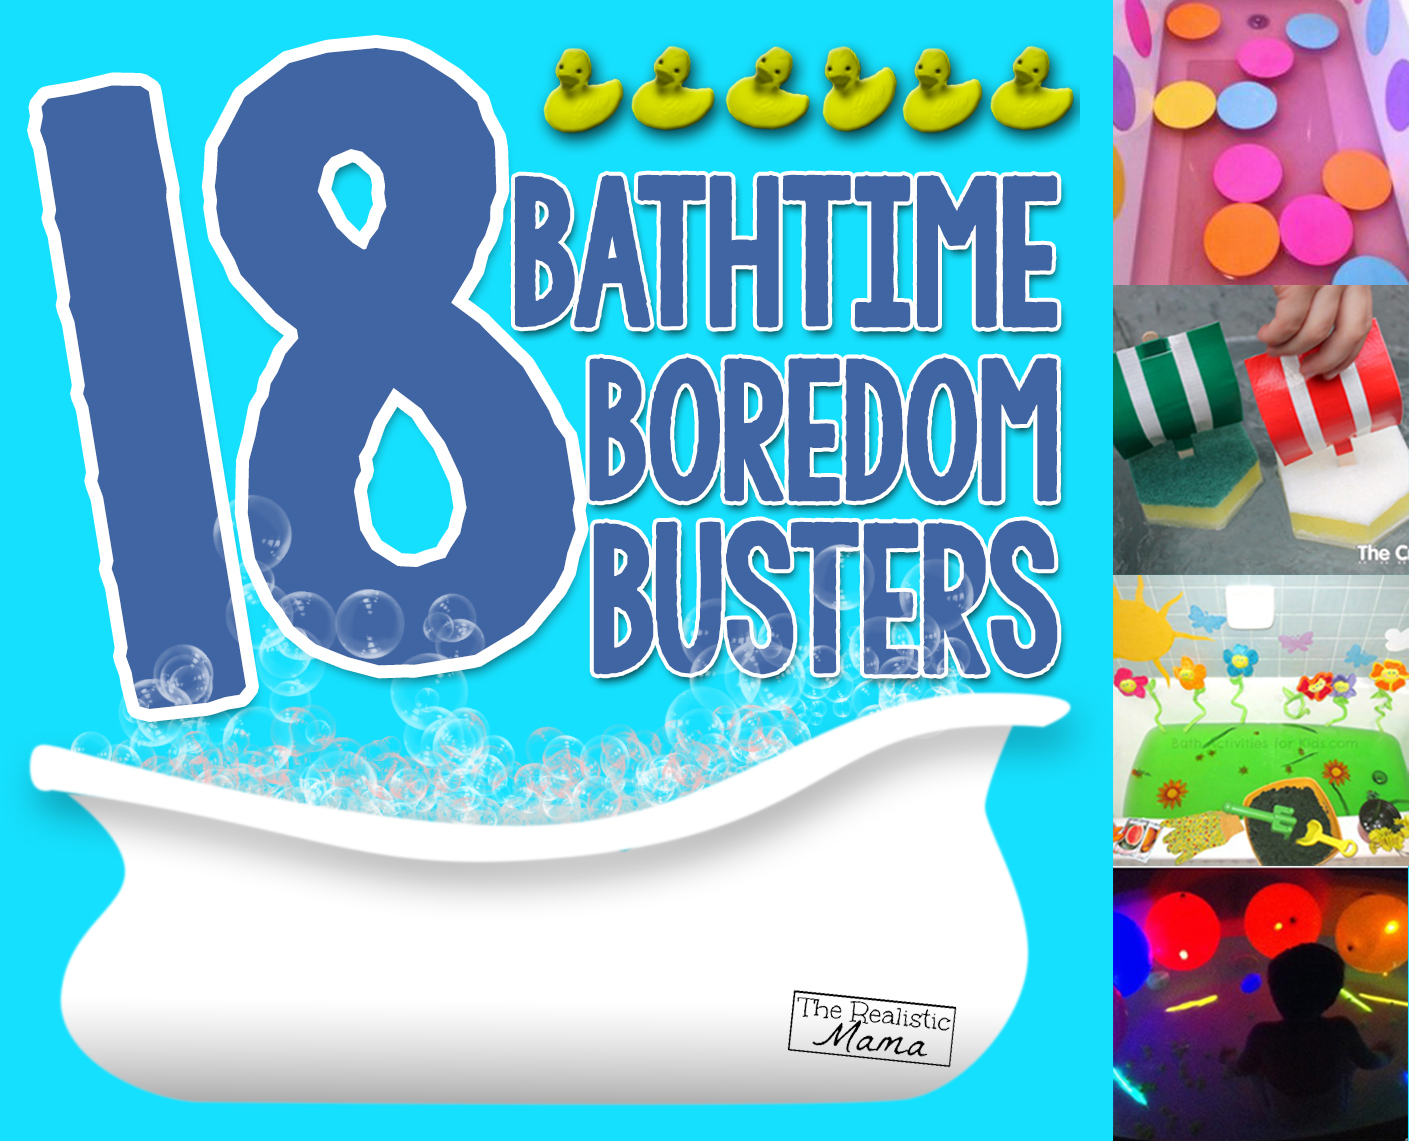 Kids Bath Paint Recipe - Make bathtime even more fun! - Messy